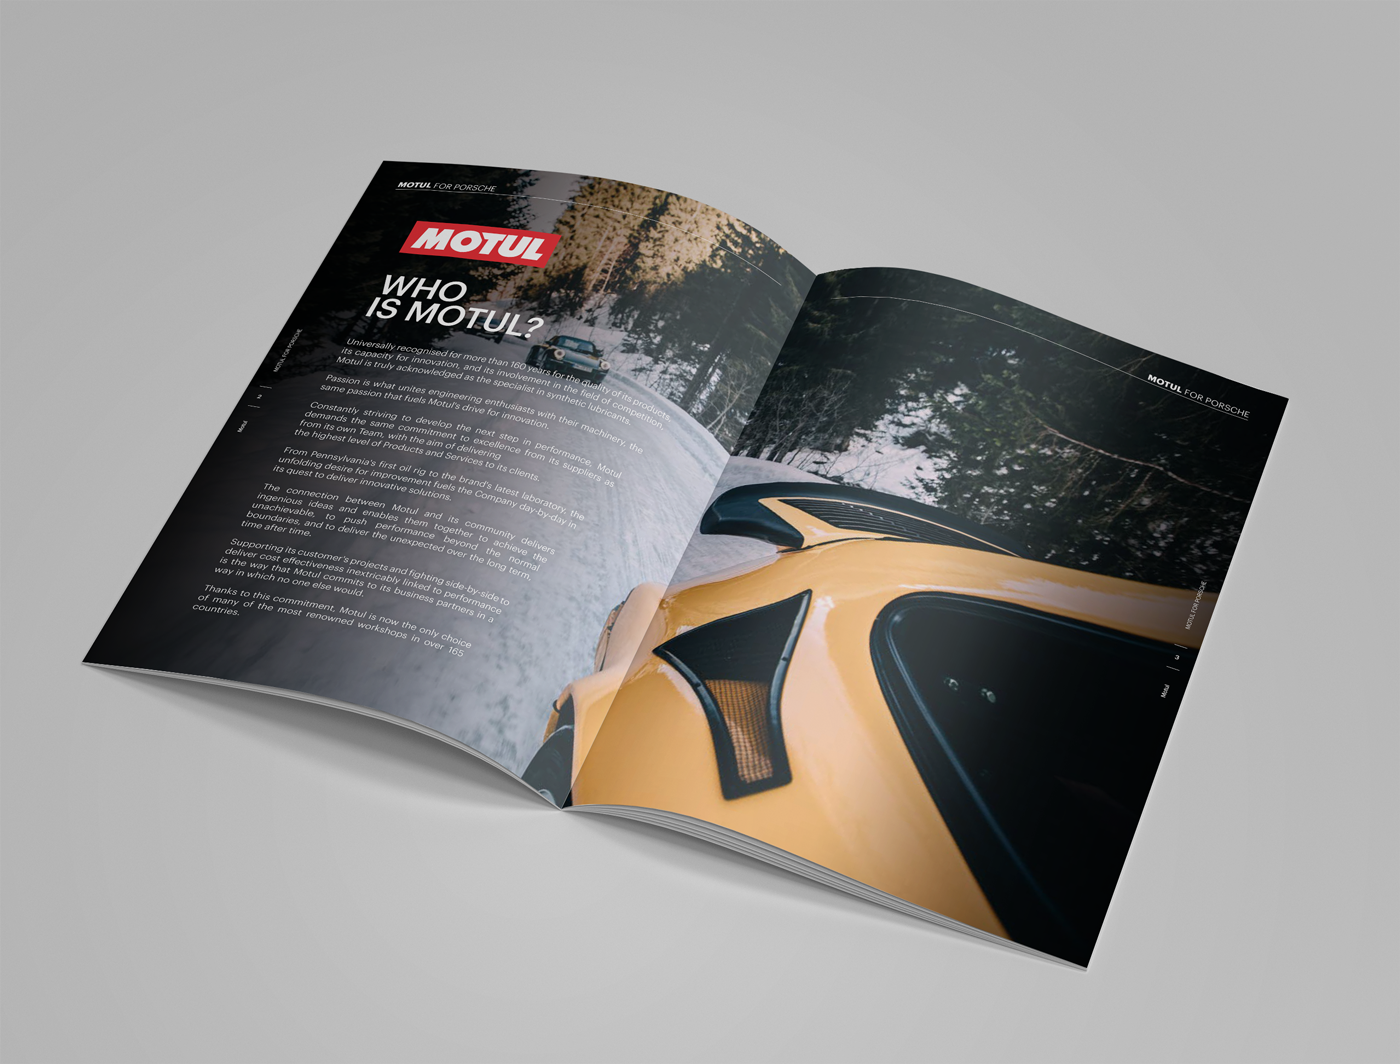 Motul Brochure Porsche spread 3